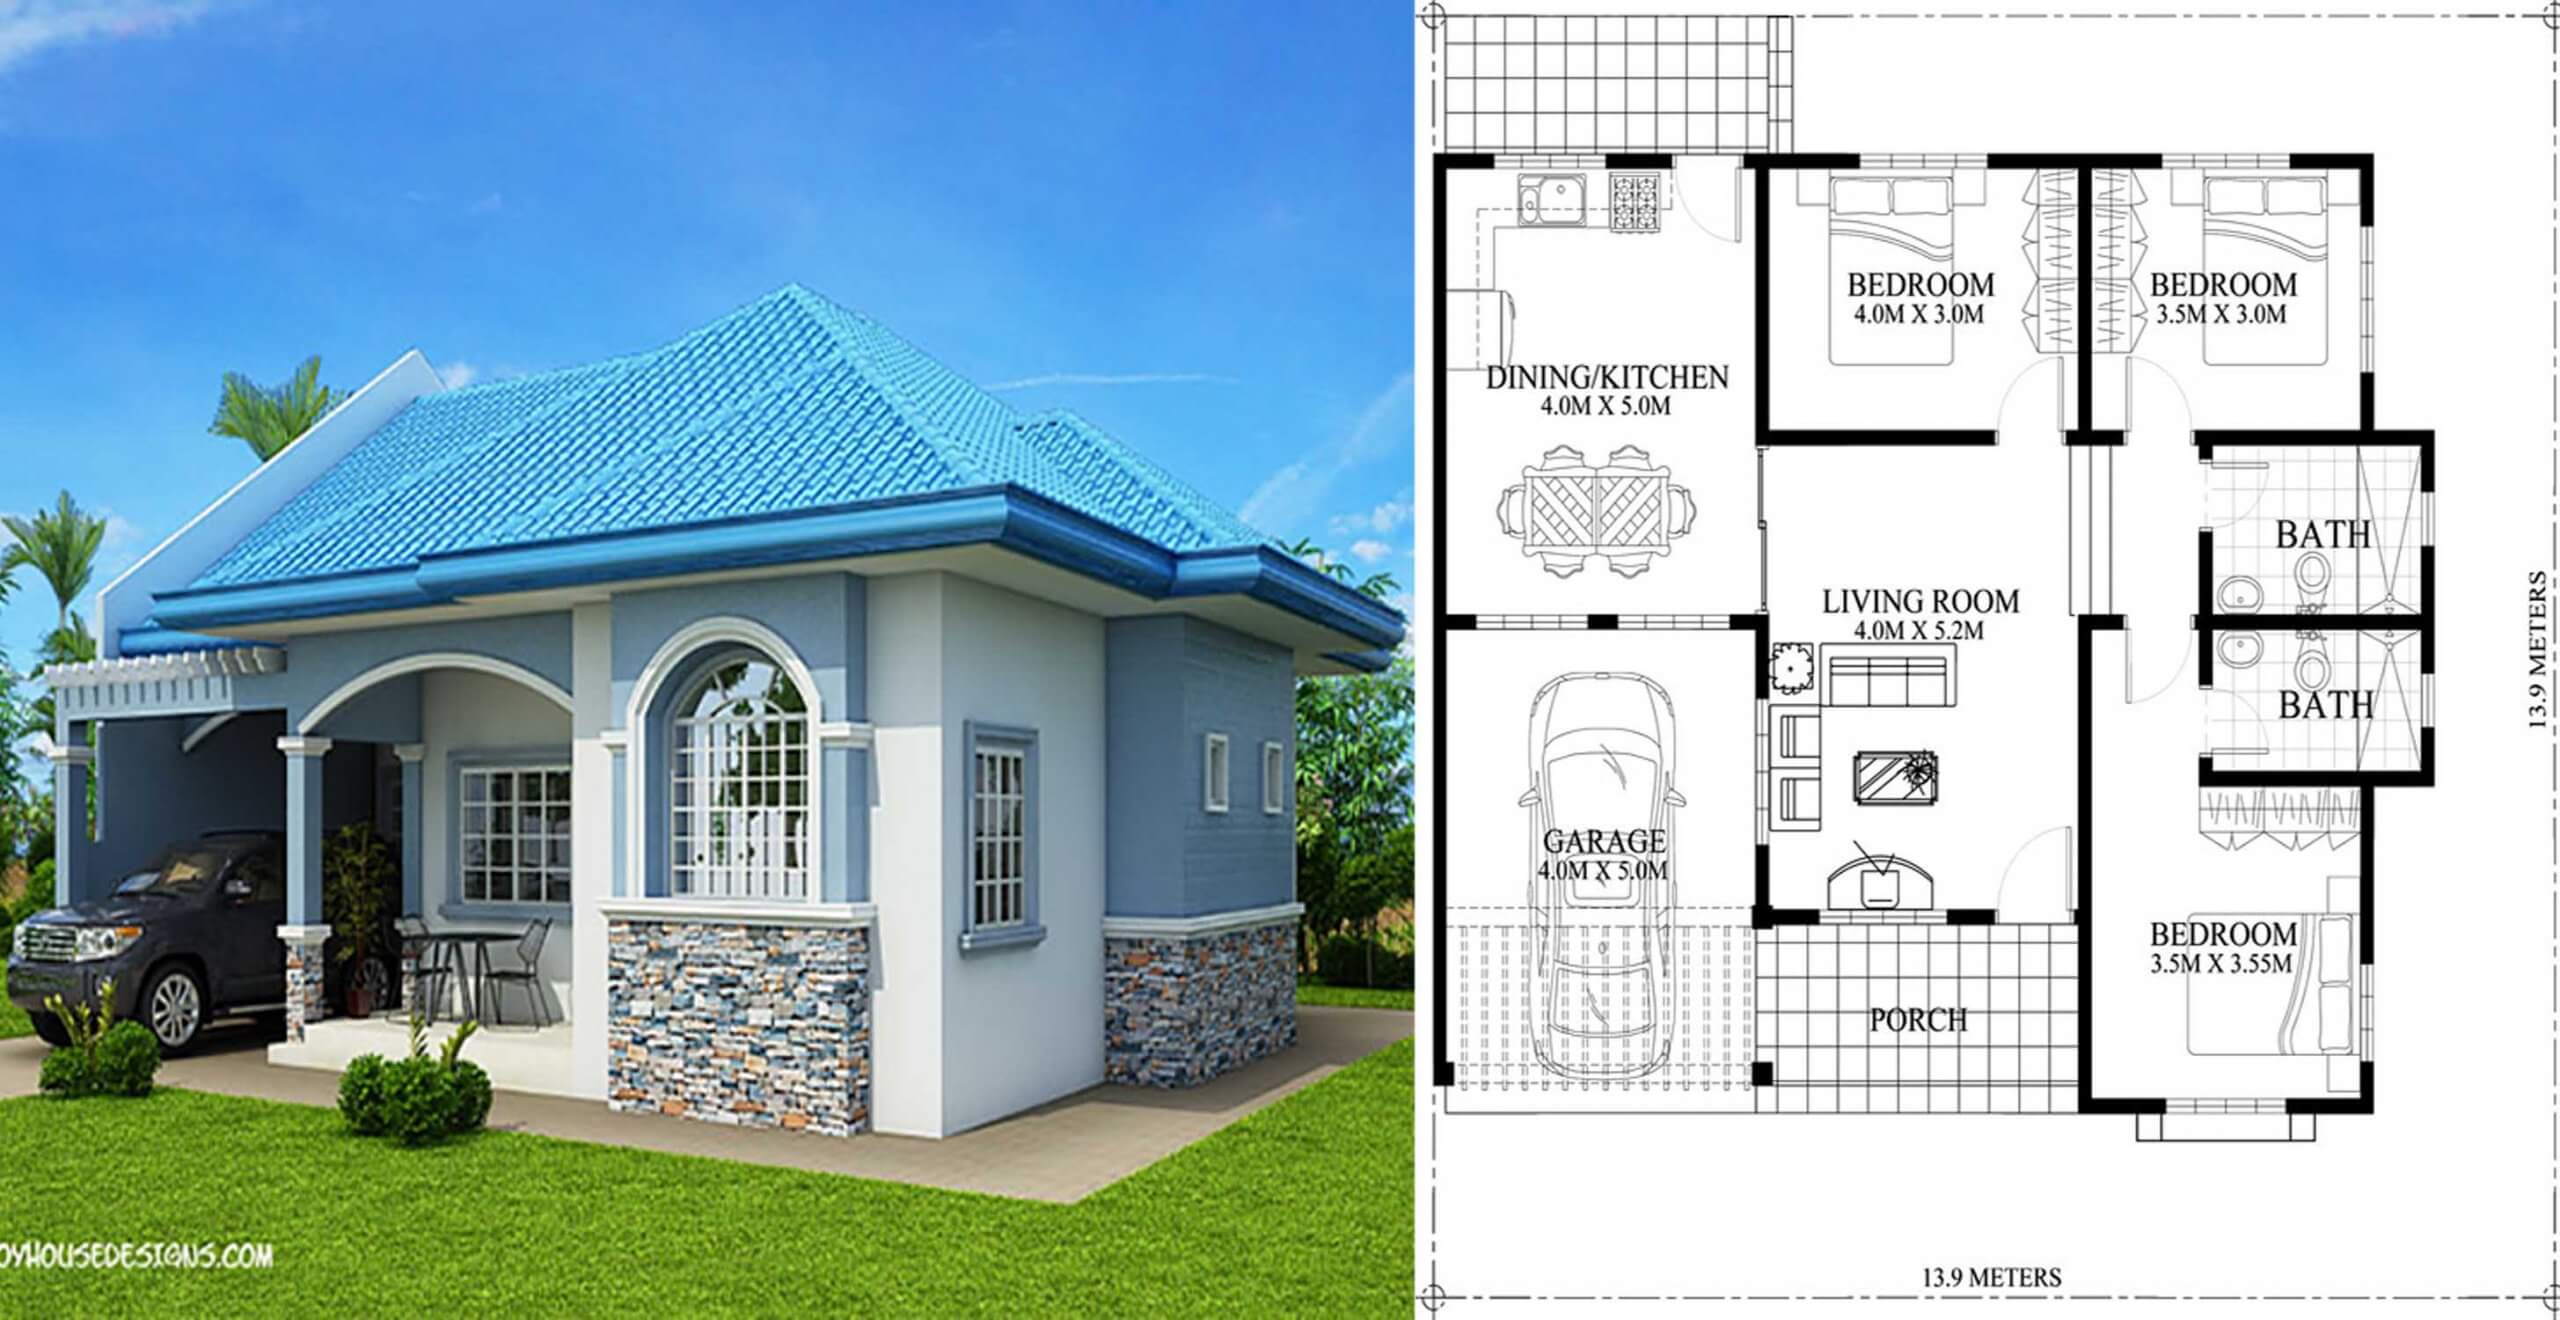 3 Bedroom Bungalow Floor Plan Philippines - floorplans.click